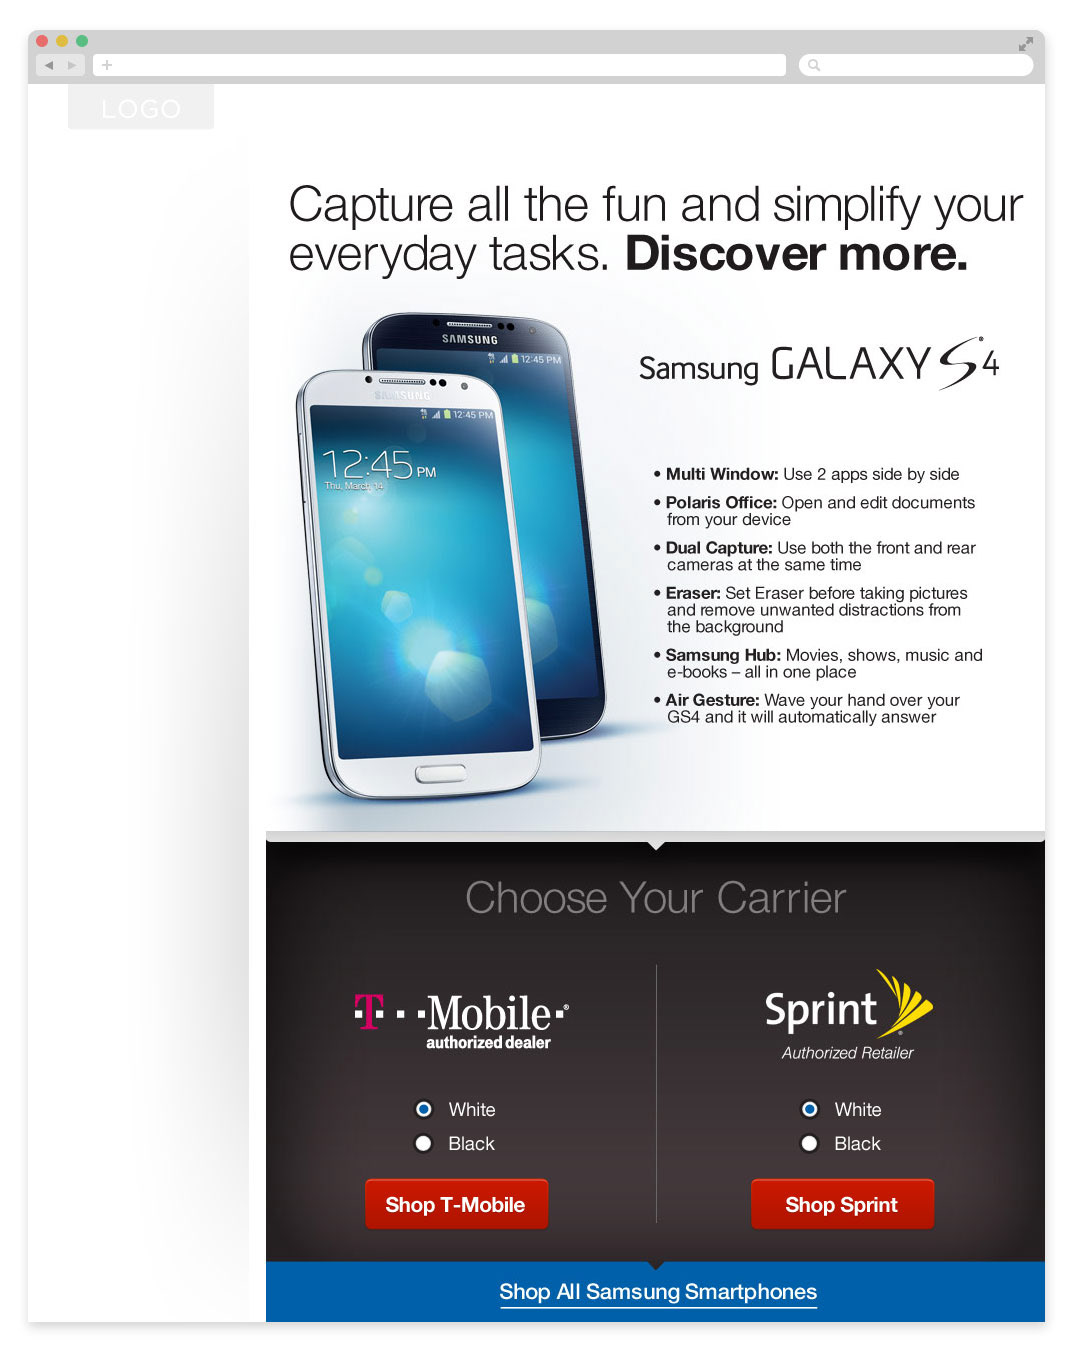 Tùy chỉnh và cài đặt ứng dụng Tin nhắn trên Samsung Galaxy S4 sẽ giúp bạn dễ dàng quản lý và chia sẻ tin nhắn của mình. Bạn có thể tự do tùy chỉnh văn bản, chia sẻ hình ảnh và video một cách dễ dàng, đồng thời, có khả năng lọc và bảo vệ các tin nhắn quan trọng. Hãy xem hình ảnh để biết thêm chi tiết!